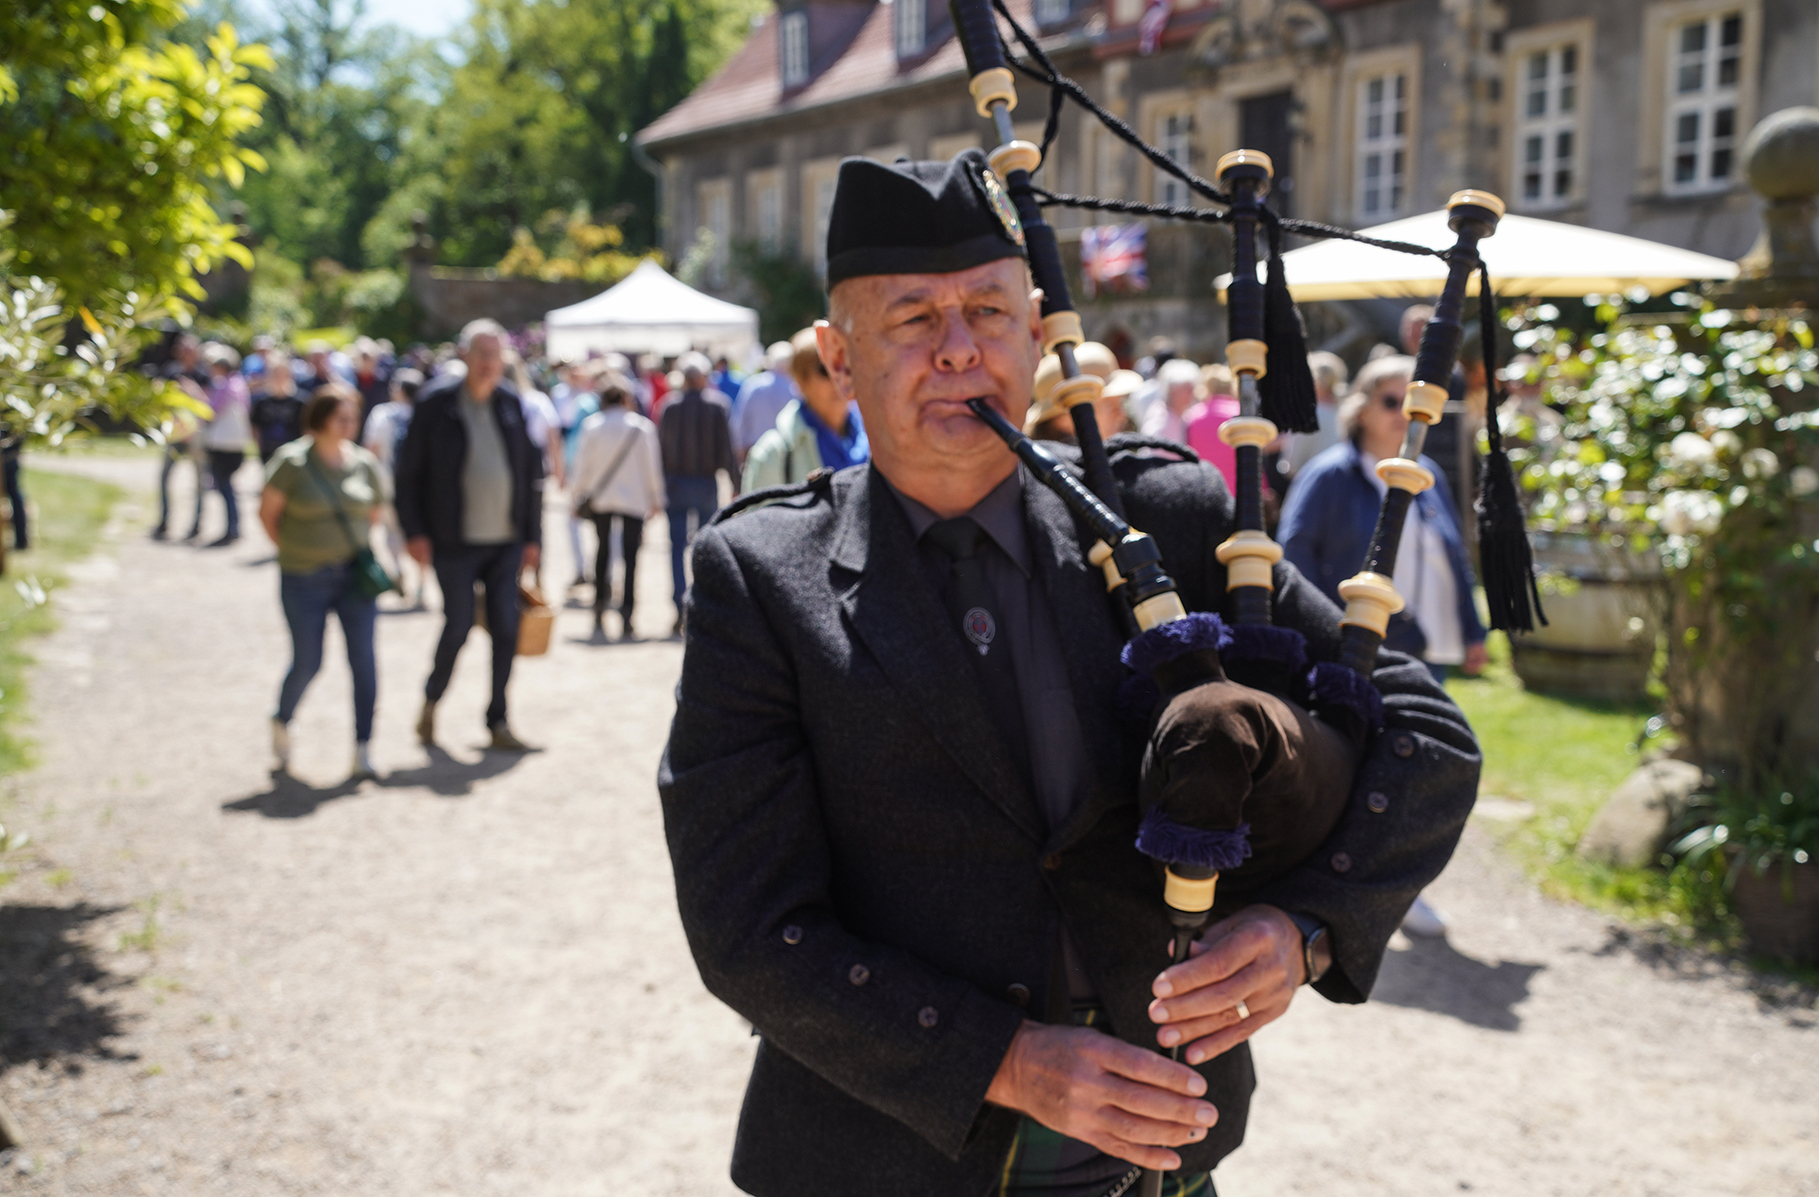 Piper David Johnston marschiert mit seinem Dudelsack vor dem Herrenhaus von Rittergut Remeringhausen auf und ab und unterhält die Besucher des Events British Weekend.